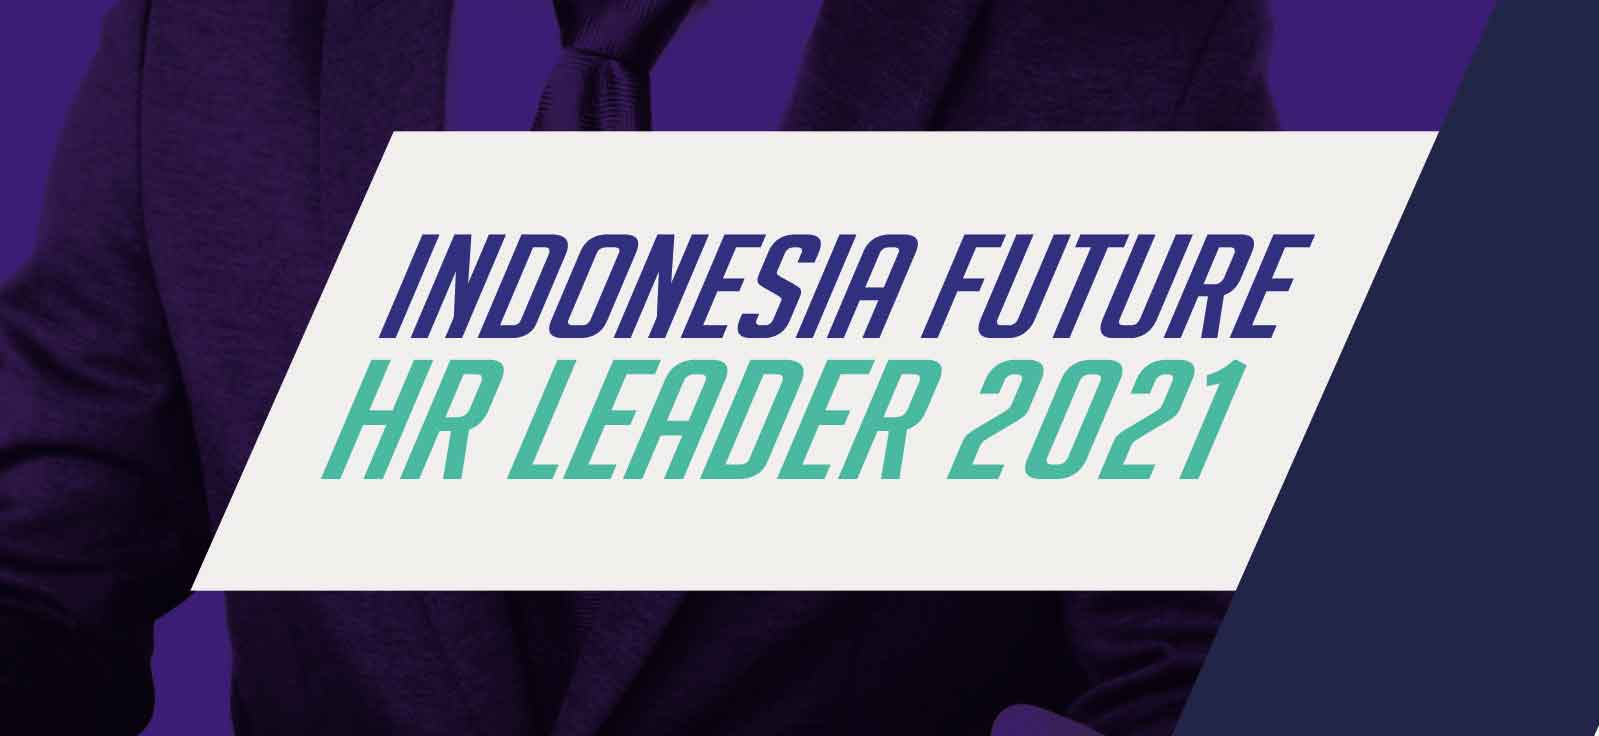 Indonesia Future HR Leader